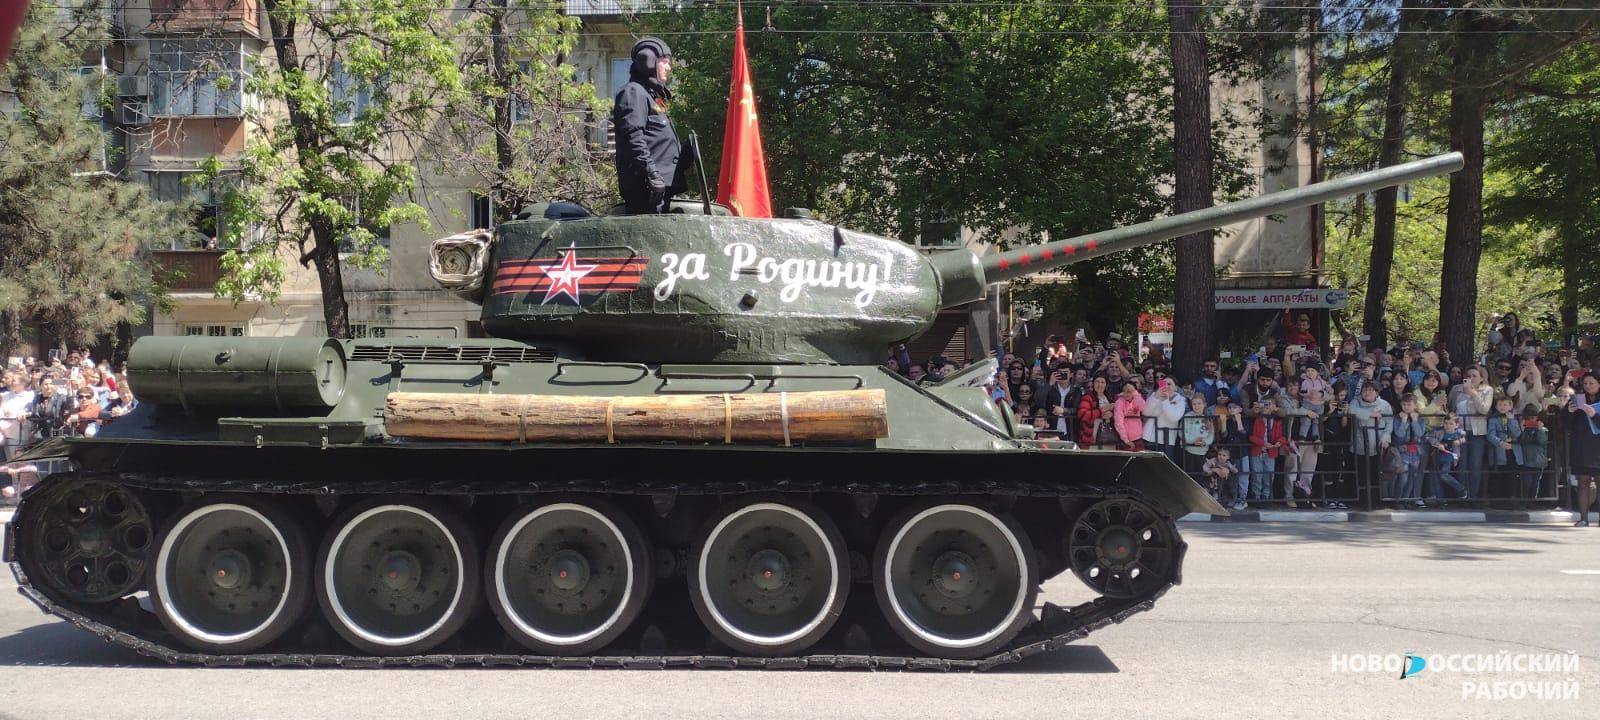 В Новороссийске с постамента на Волчьих воротах убрали танк времён Великой Отечественной. Где он теперь?